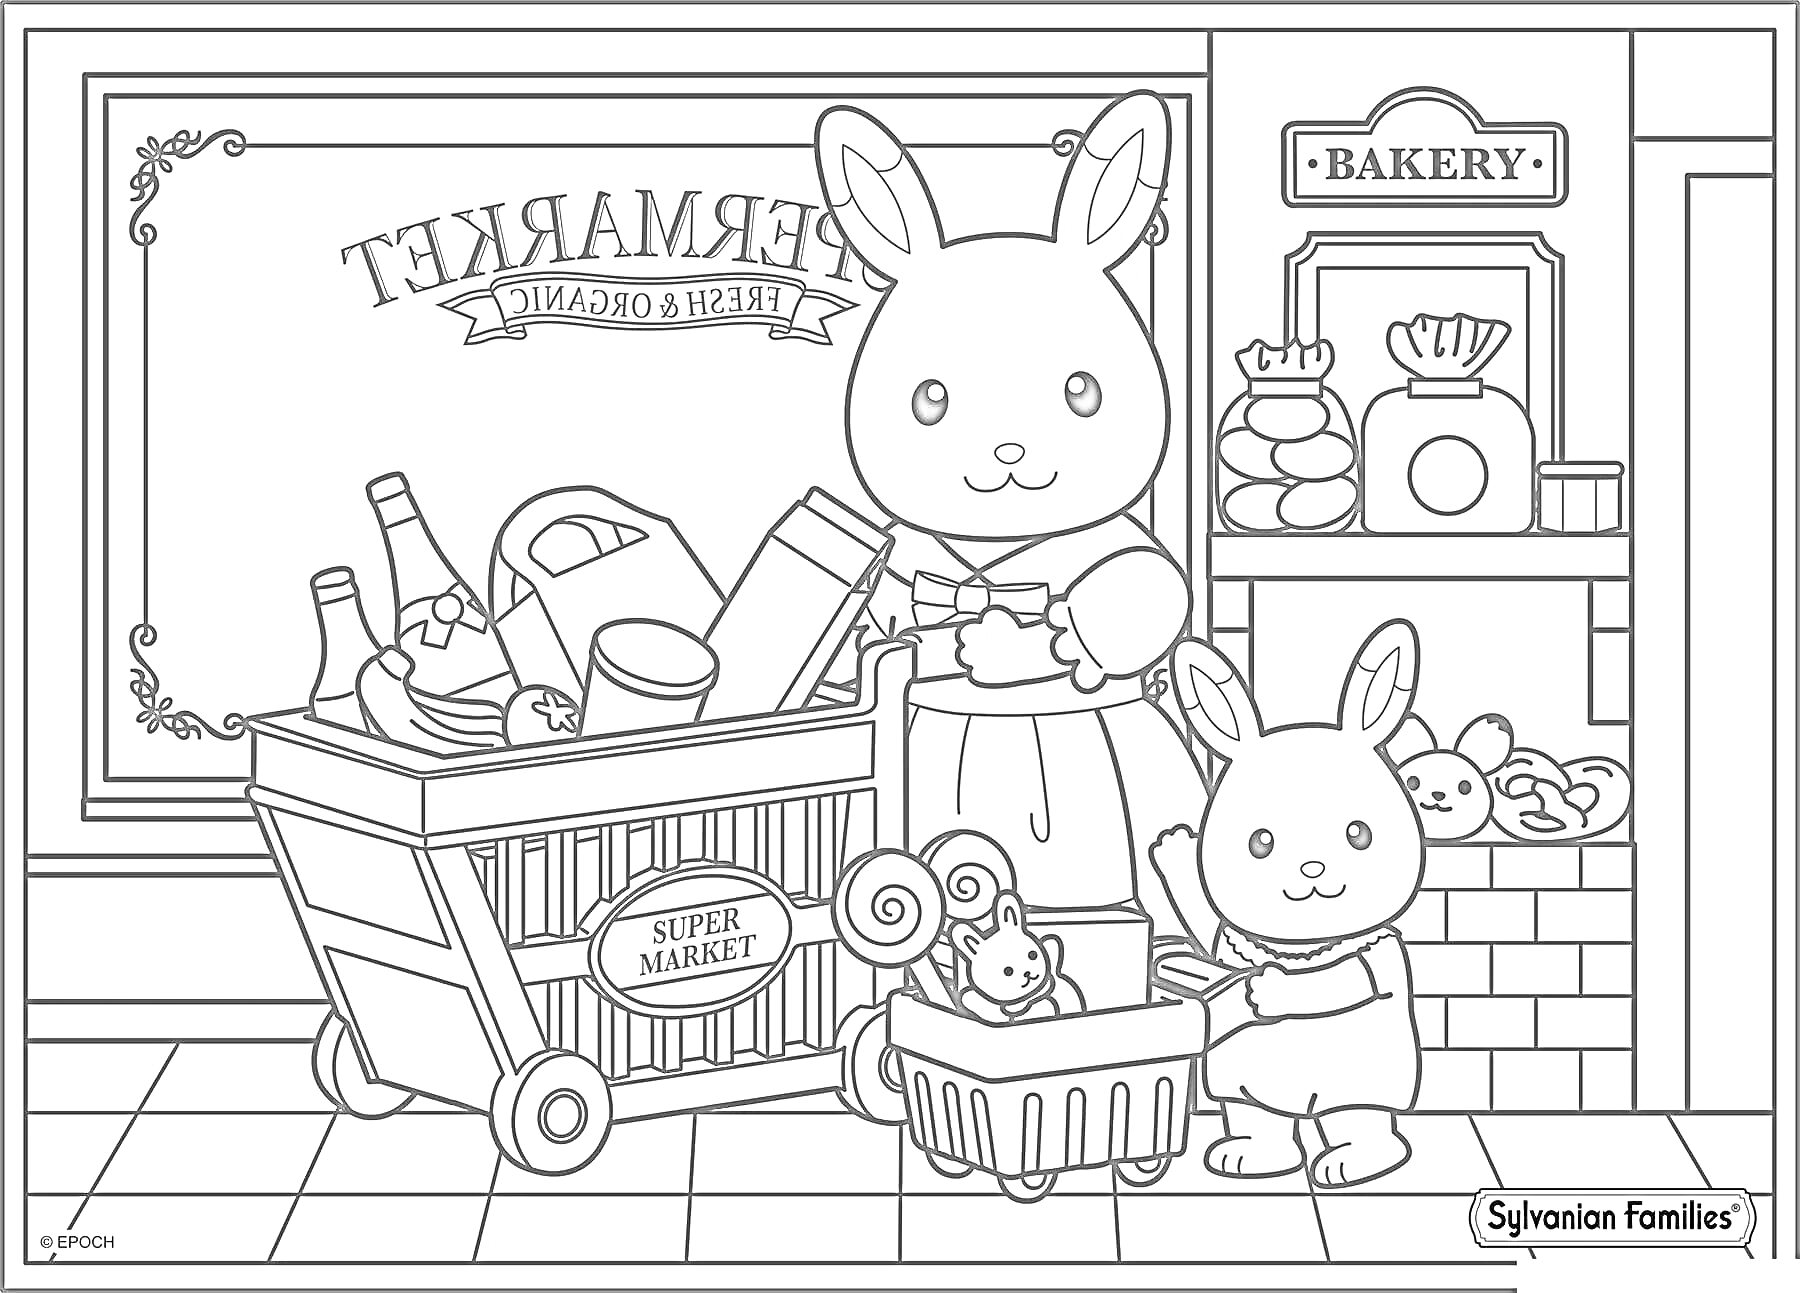 Раскраска два кролика с тележкой и корзиной у супермаркета, пекарня на заднем плане, фрукты, хлеб, бутылки, ящик, корзина